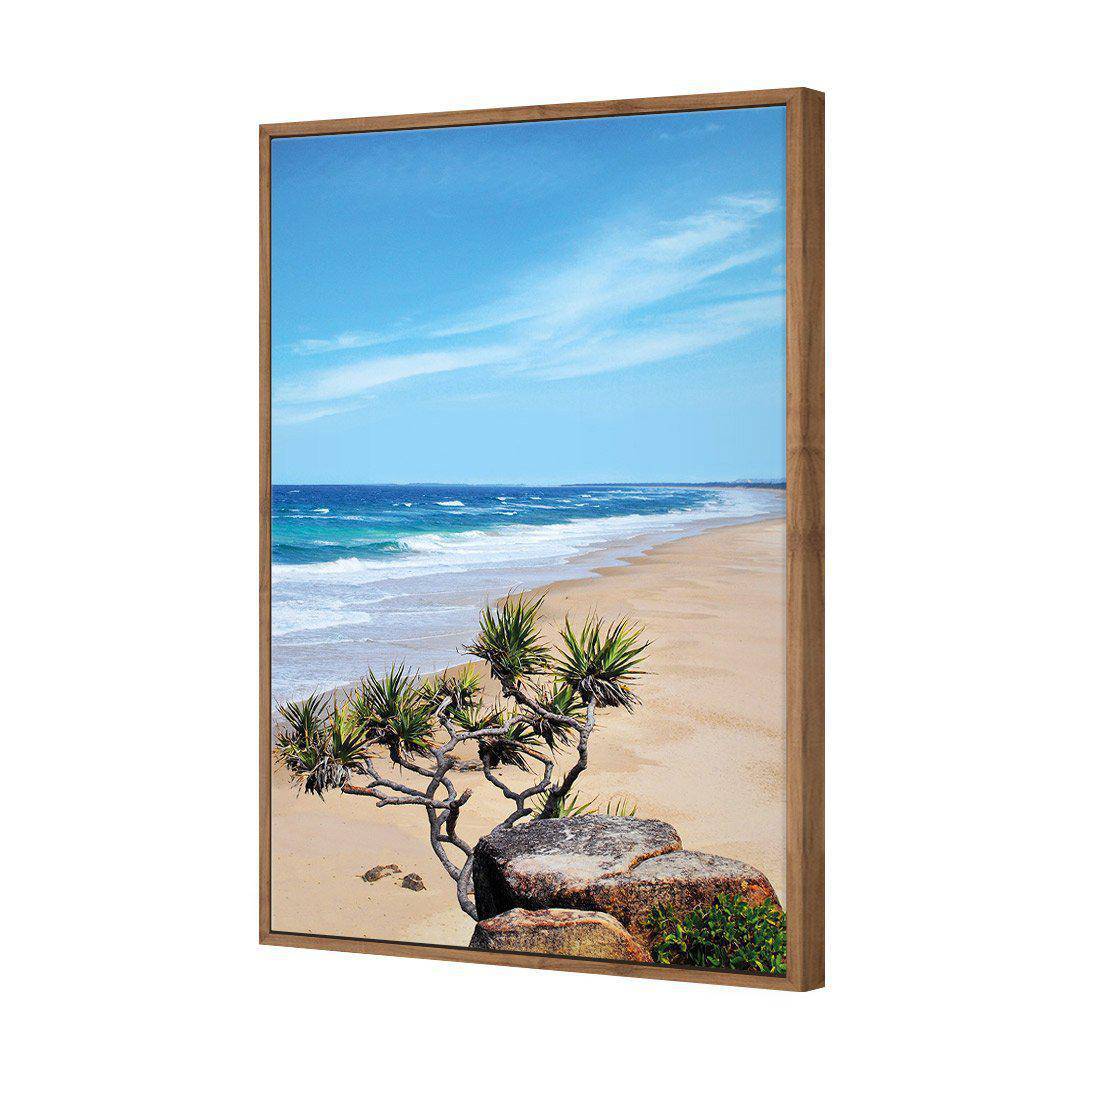 Coolum Beach Canvas Art-Canvas-Wall Art Designs-45x30cm-Canvas - Natural Frame-Wall Art Designs